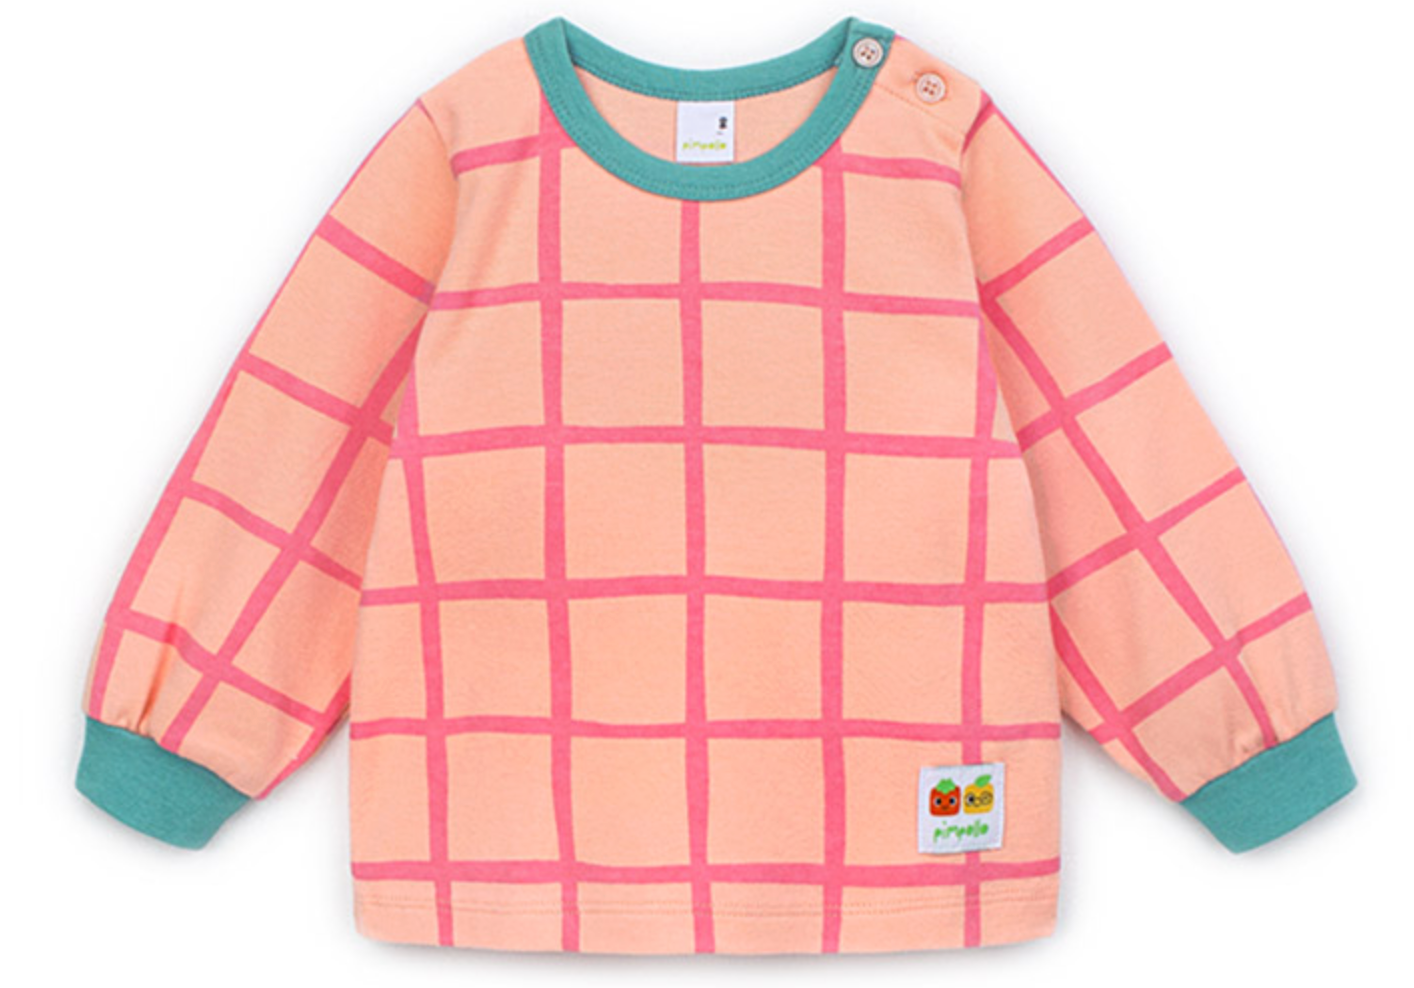 Check Pattern Pajama Set - Pink